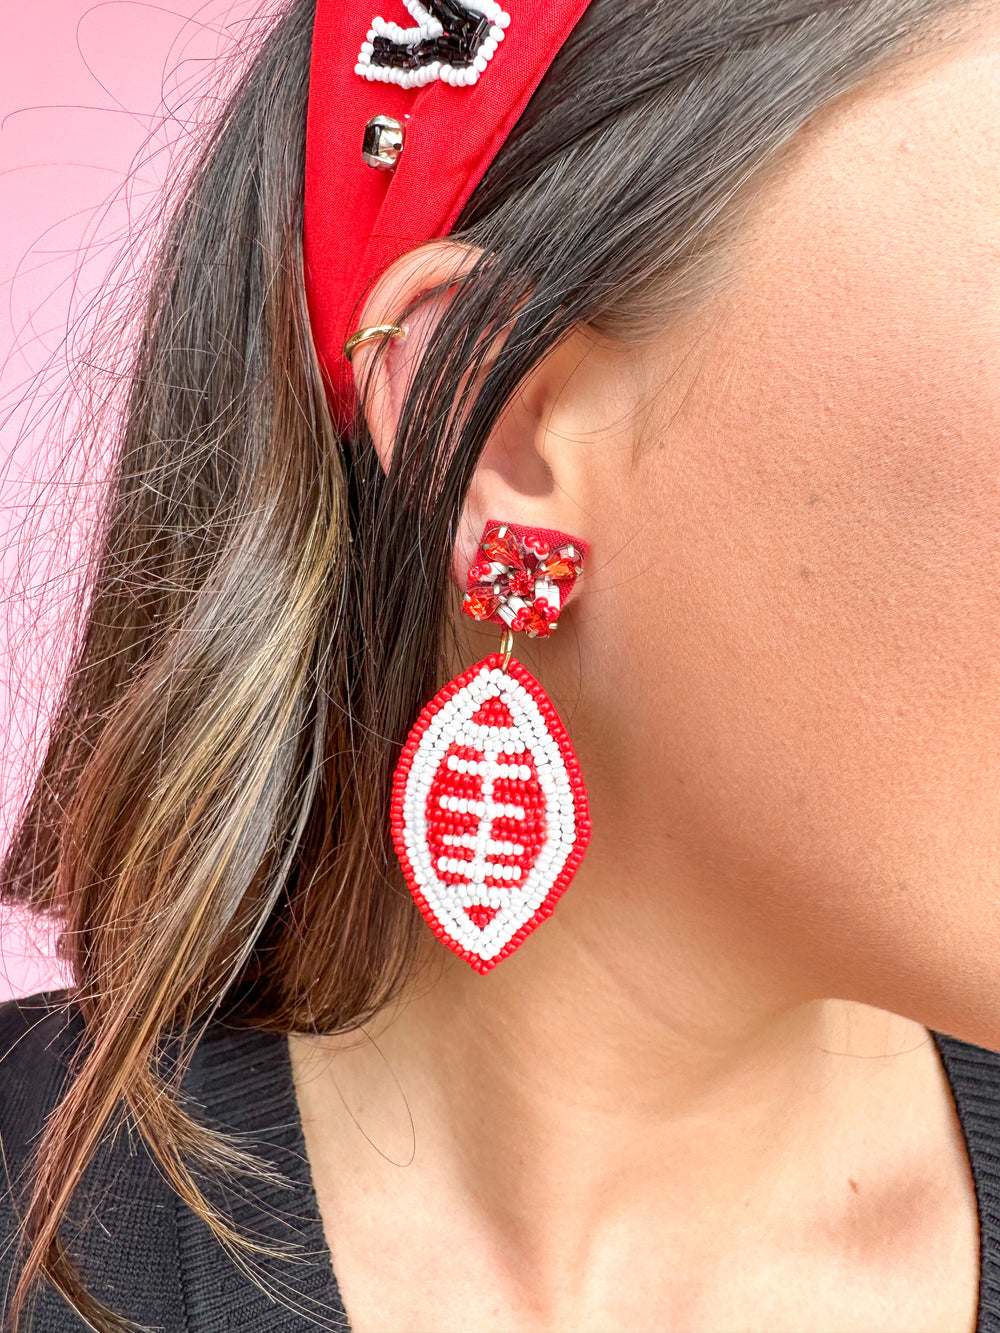 Red/White Beaded Earrings